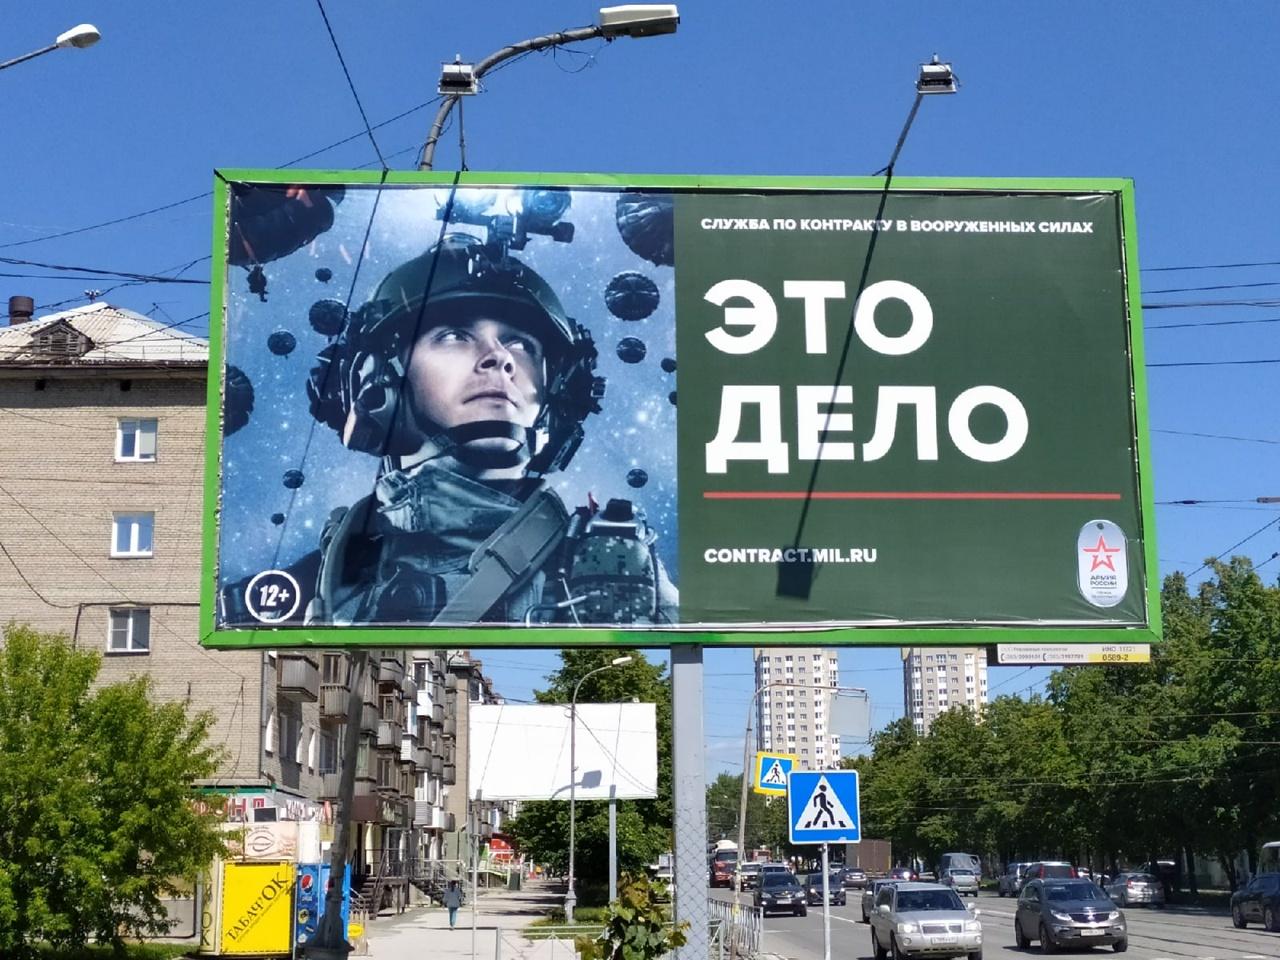 Фото В Новосибирске началась рекламная кампания службы по контракту 2